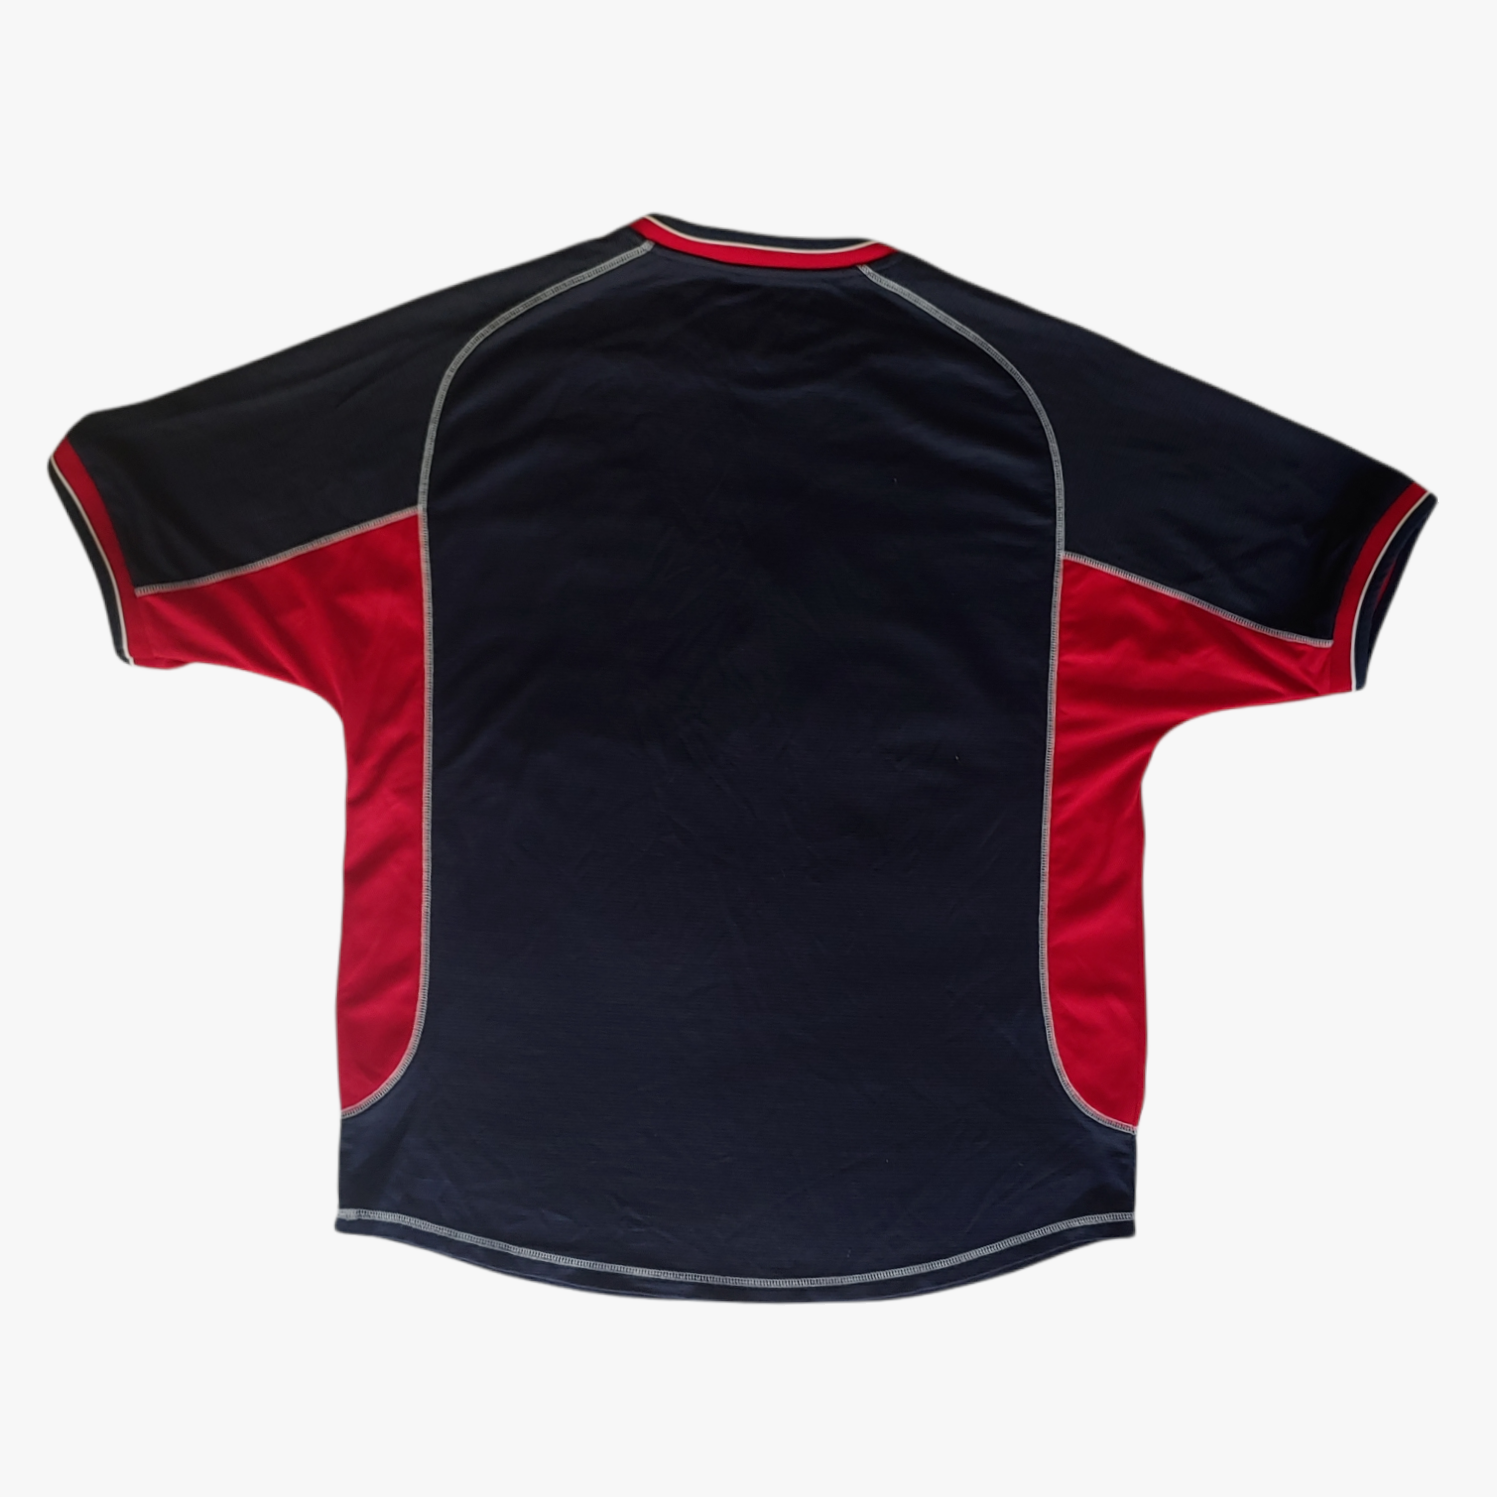 Vintage Manchester United 2000 2001 Away Football Jersey Shirt Back - Casspios Dream